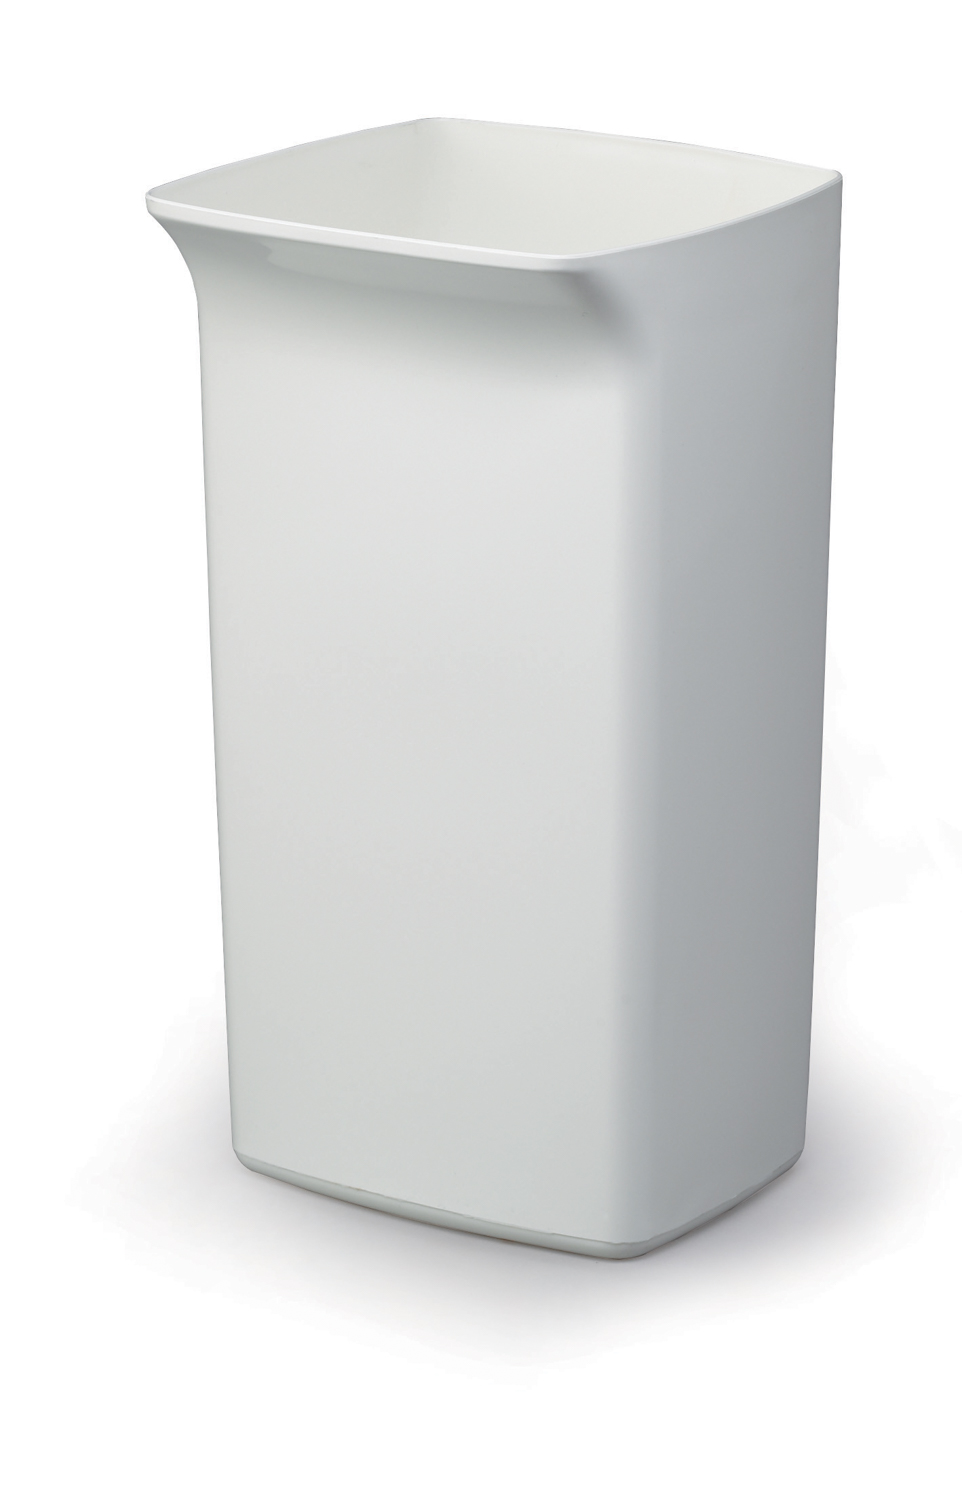 Durable Abfallbehälter mit Schwingdeckel in grün. Kapazität: 40 L Maße: 330 x 760 x 360 mm (B x H x T)